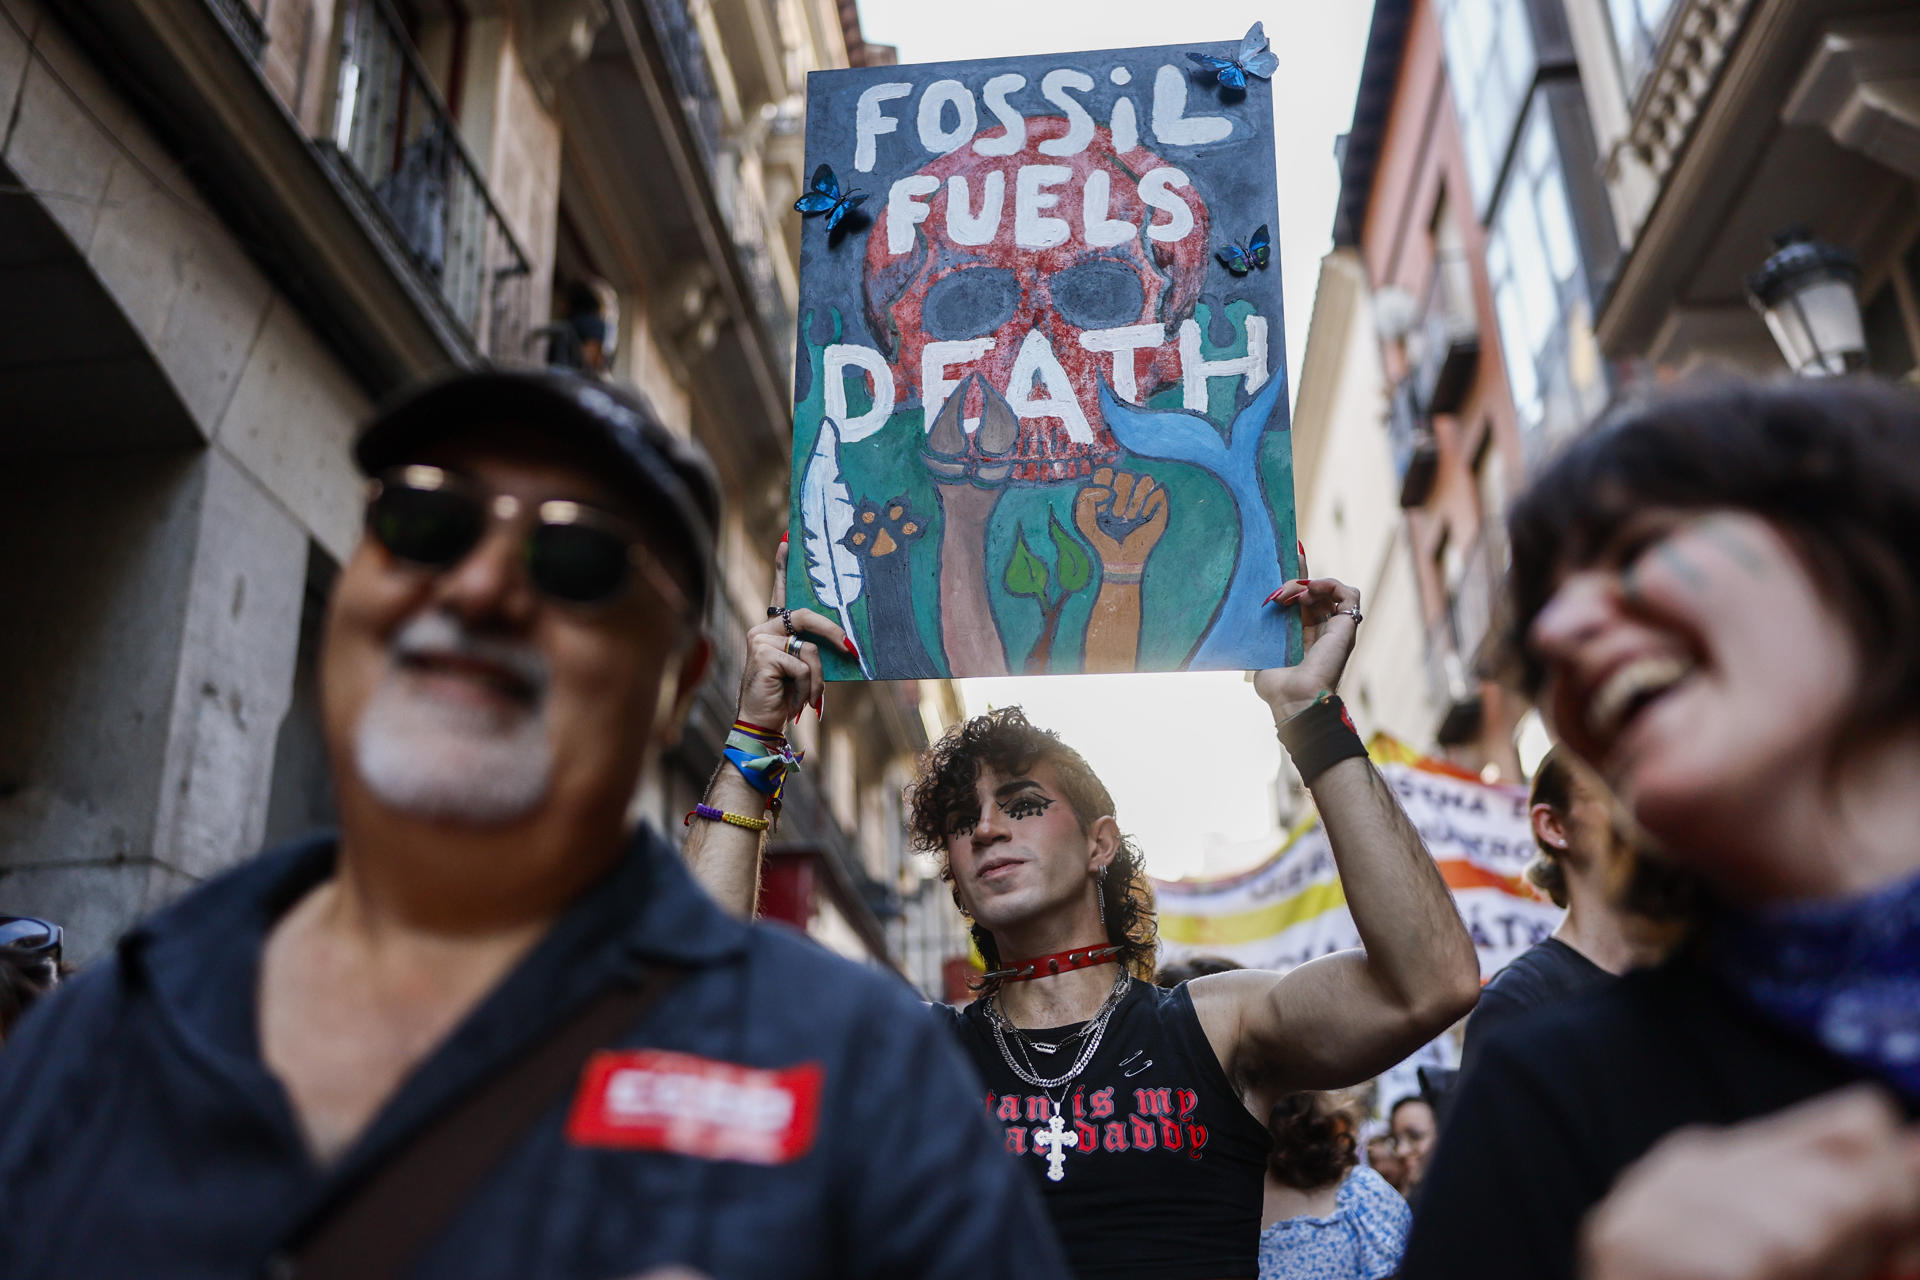 Alianza por el Clima, Fridays for Future-Juventud por el Clima y otras organizaciones medioambientales participan en una manifestación para exigir el fin de los combustibles fósiles de forma rápida, justa y definitiva el pasado viernes en Madrid.